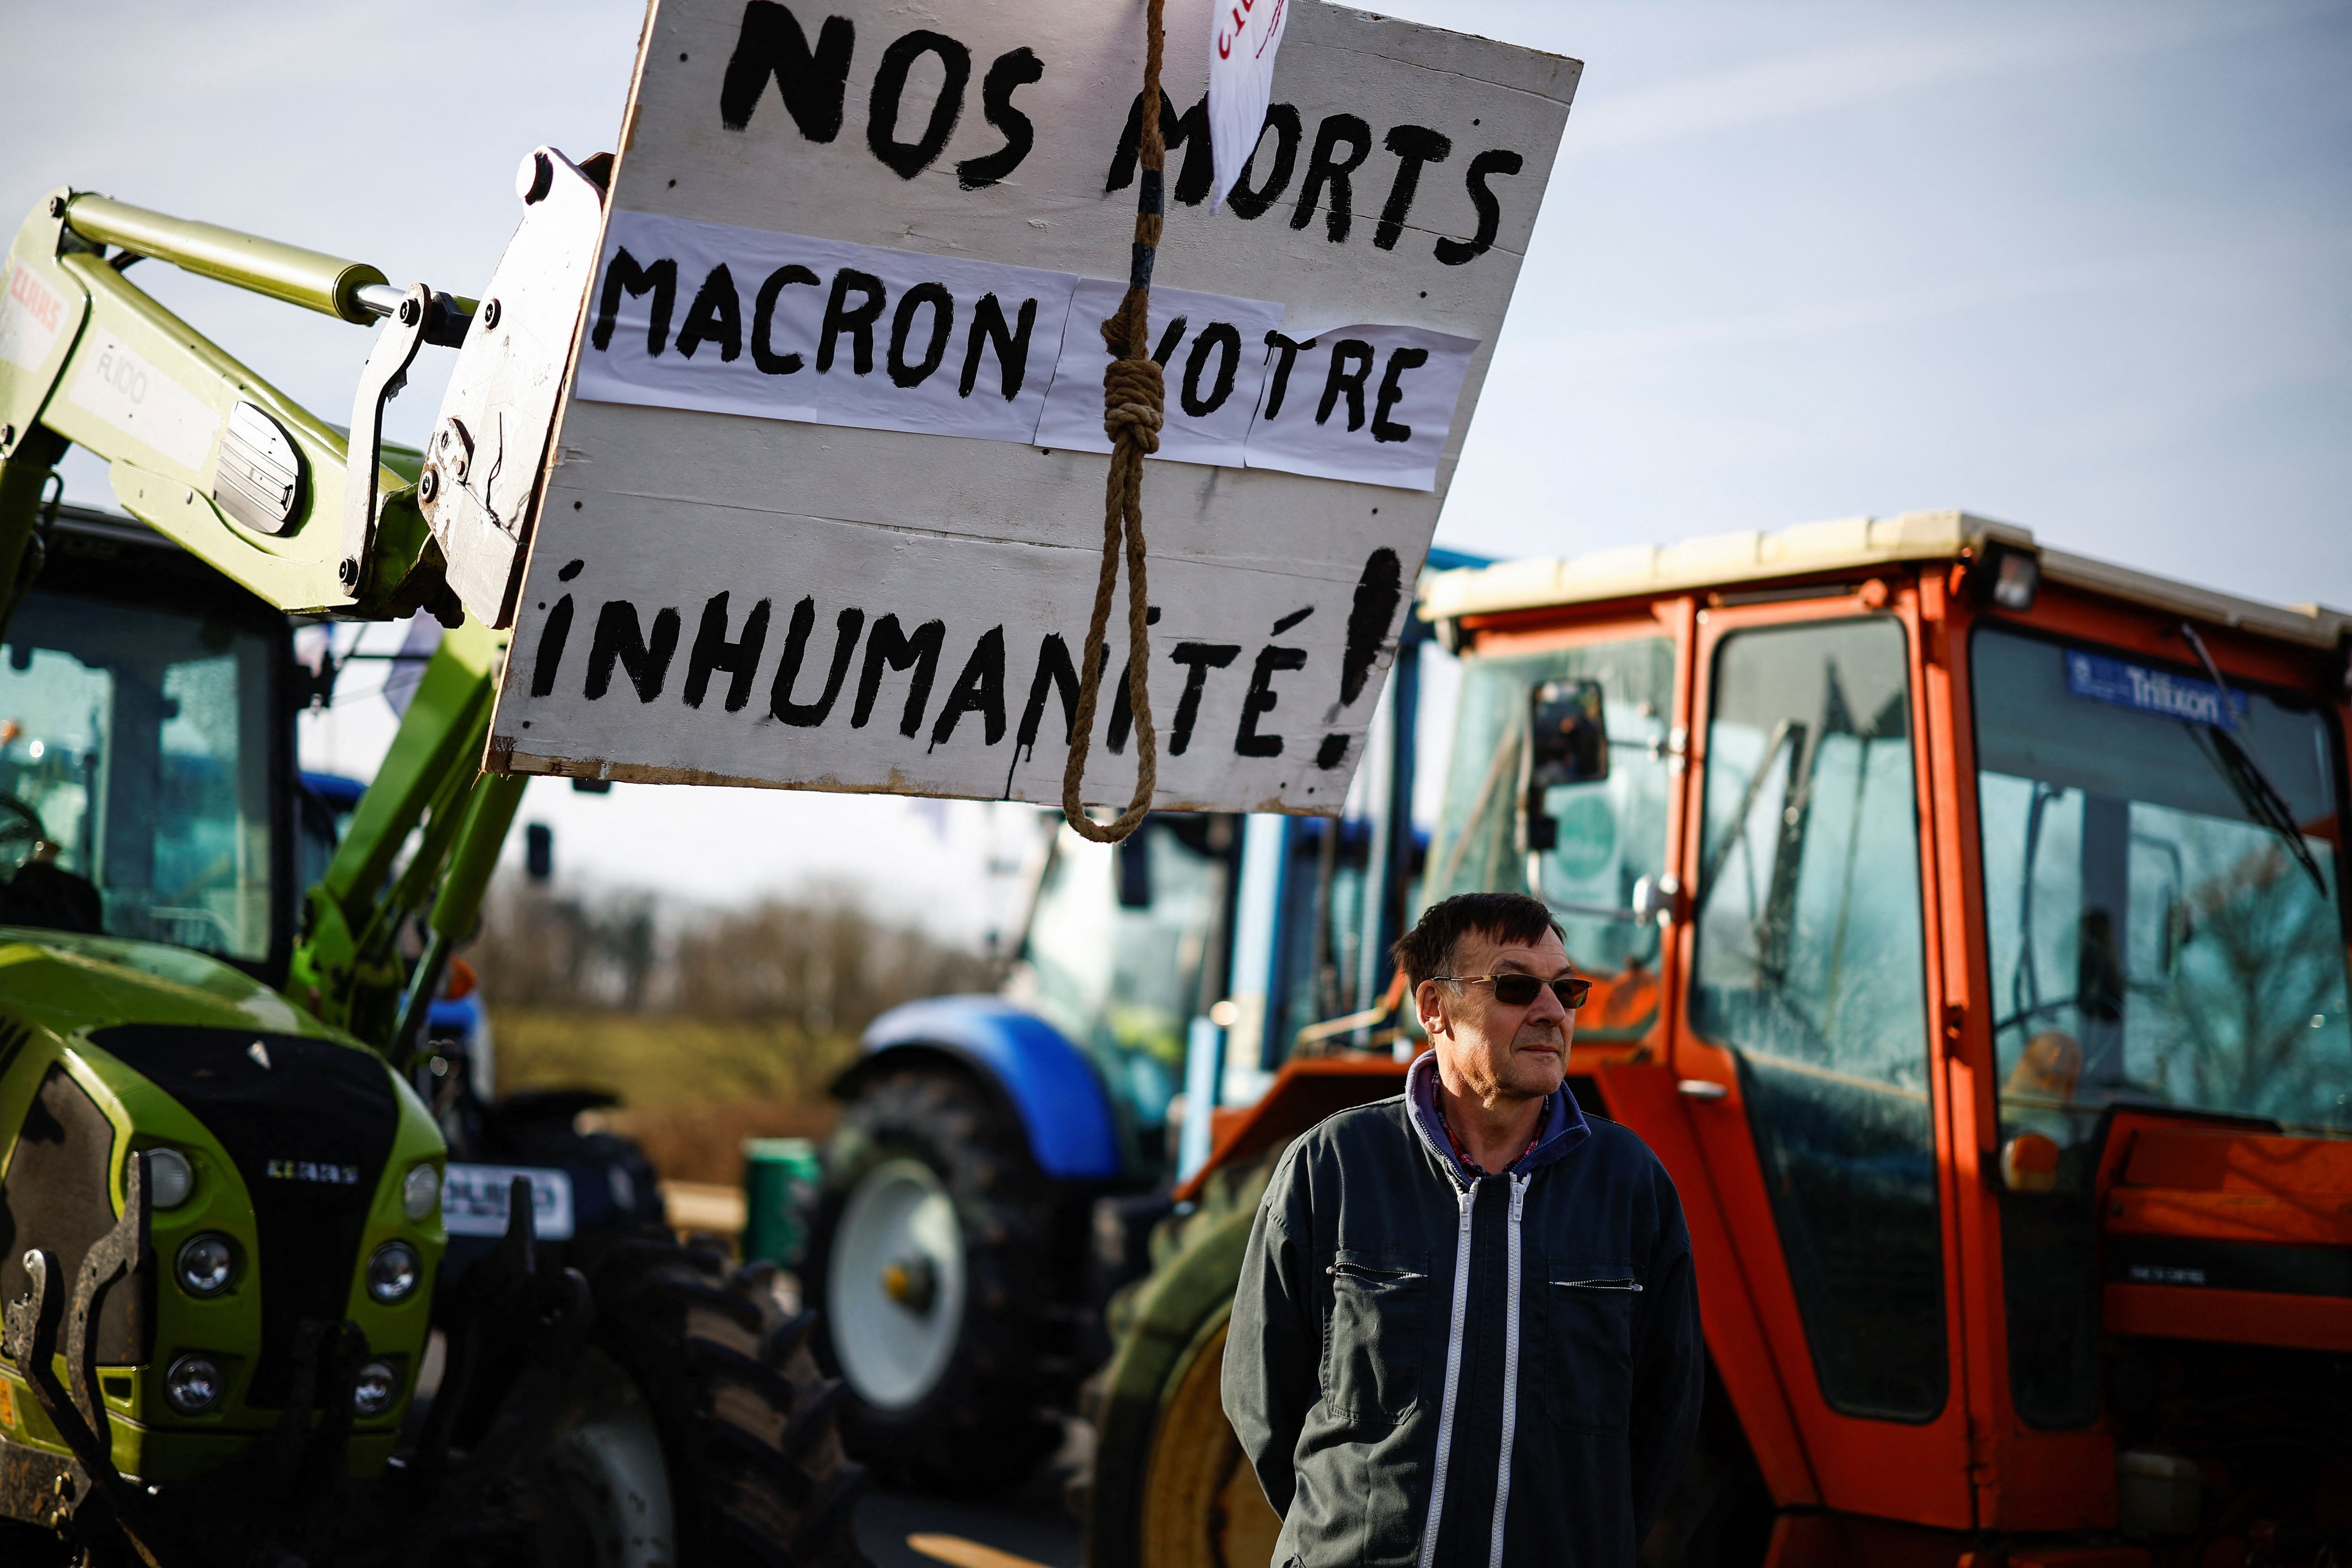 El movimiento en Francia es otra manifestación de una crisis alimentaria global empeorada por la guerra a gran escala de casi dos años de Rusia en Ucrania, un importante productor de alimentos (REUTERS/Sarah Meyssonnier)